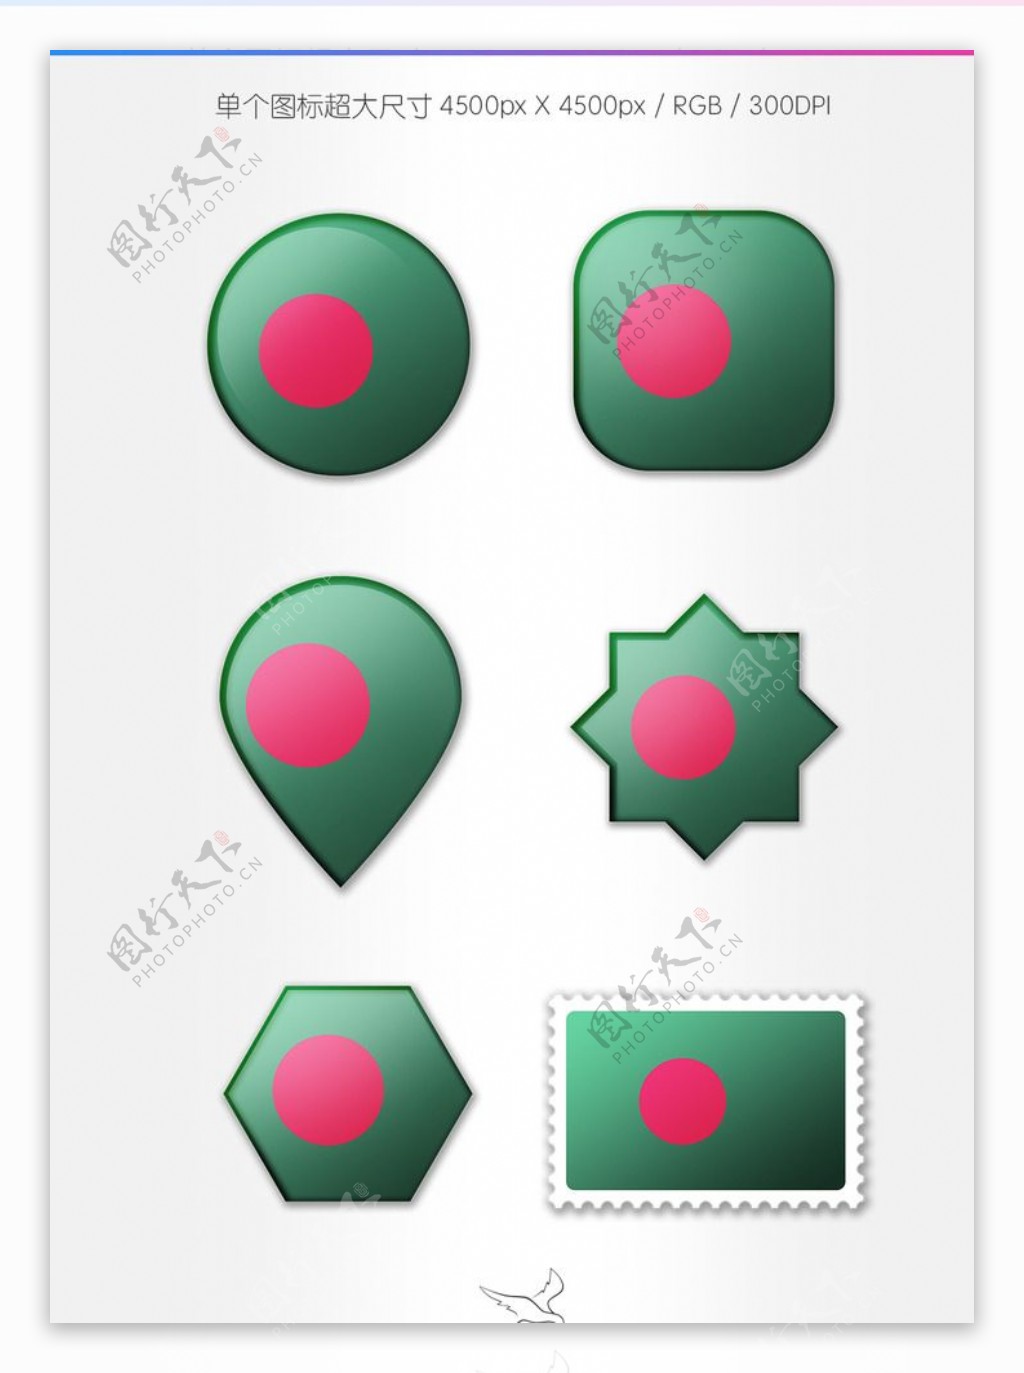 孟加拉国旗图标